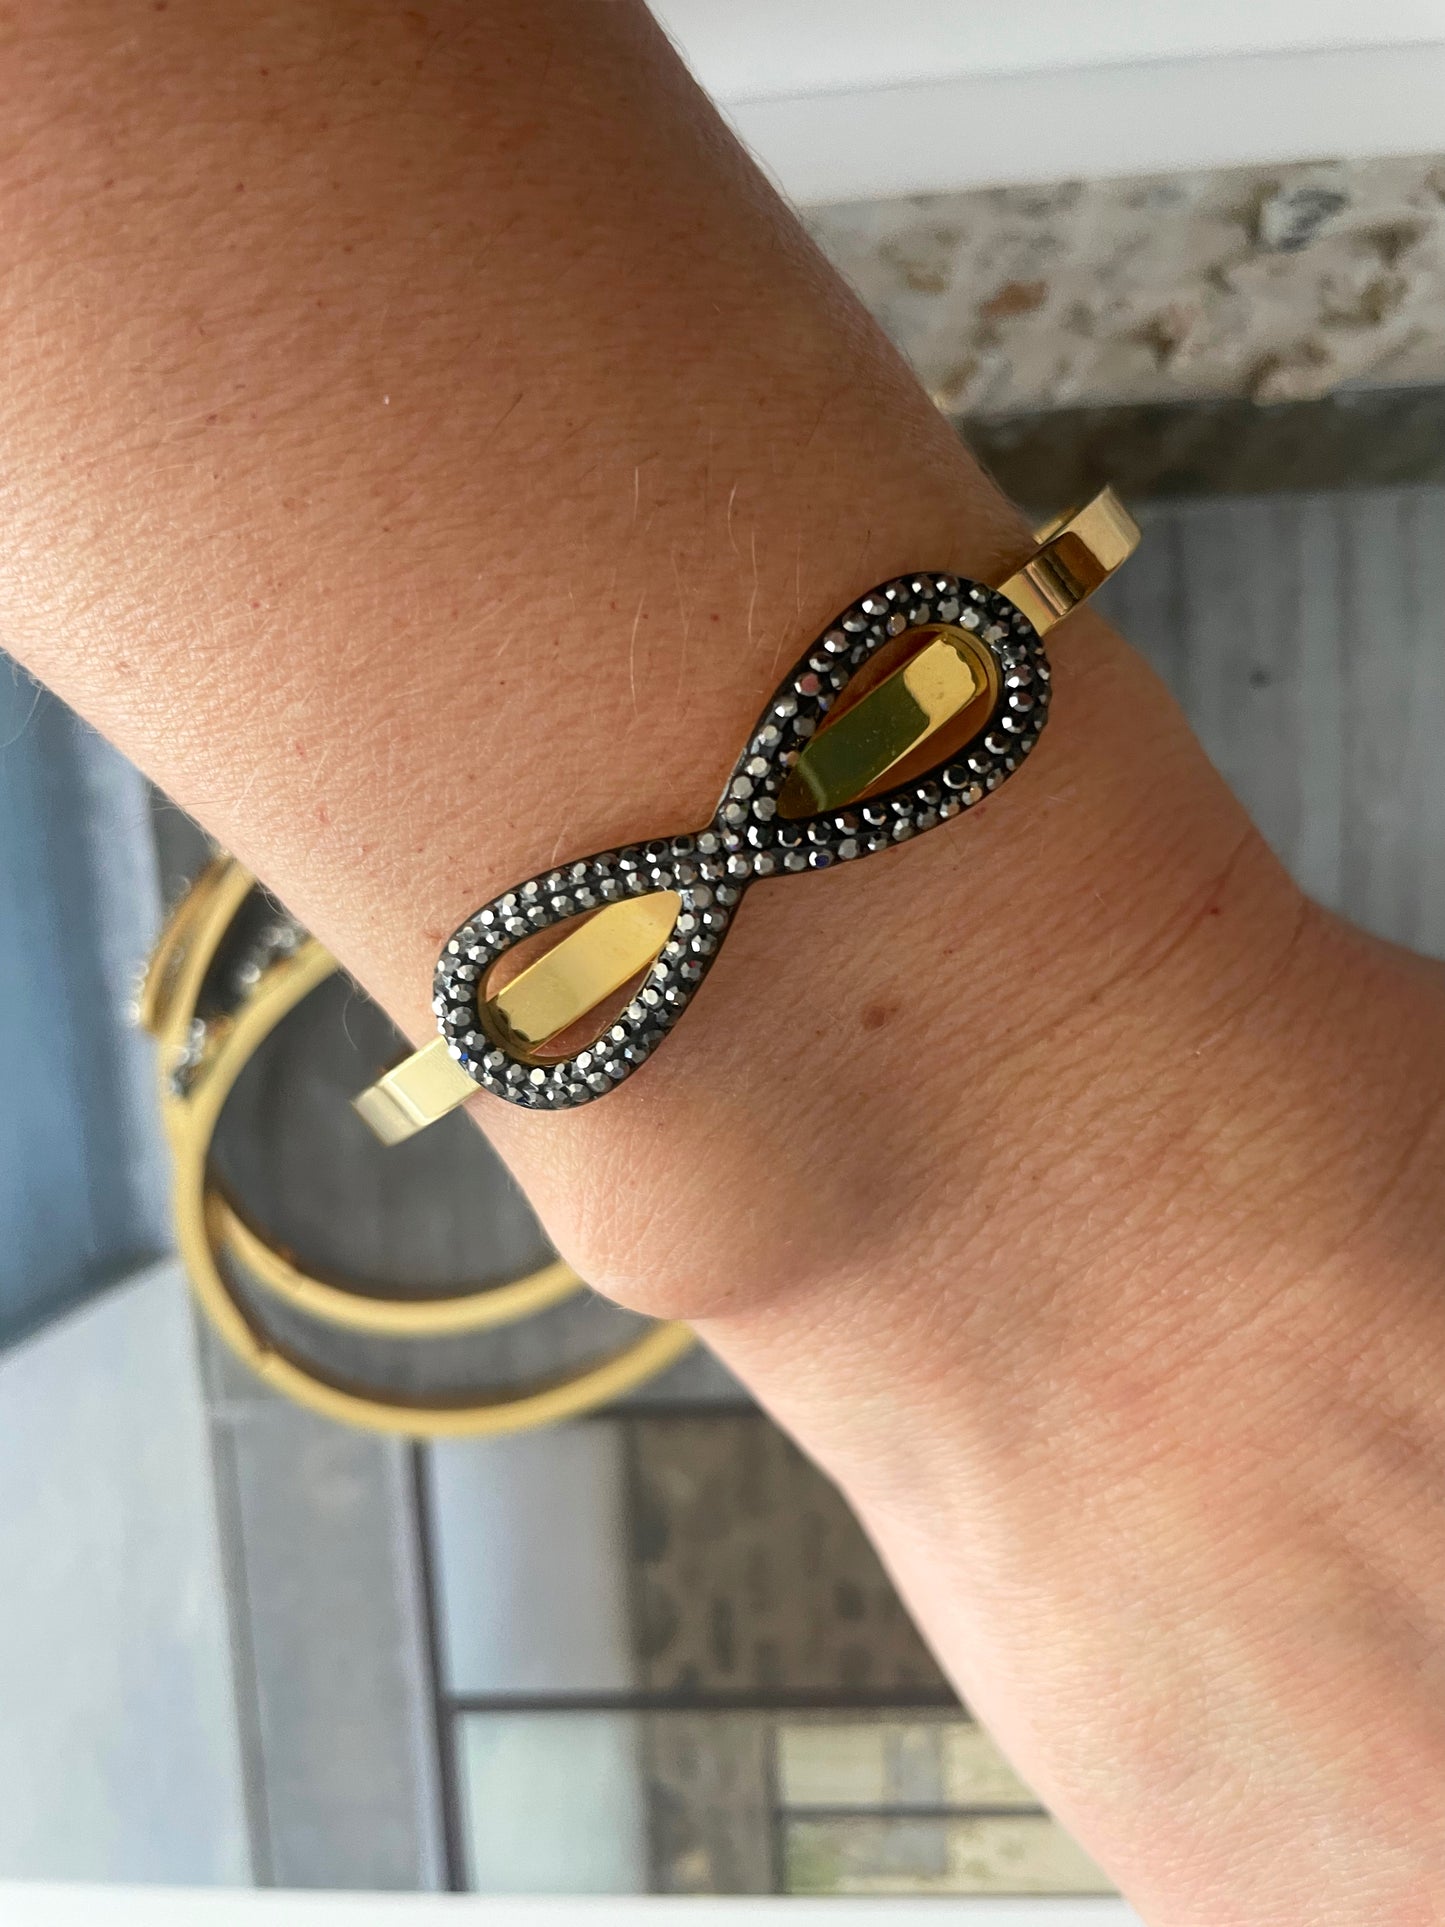 Kara bangle bracelet